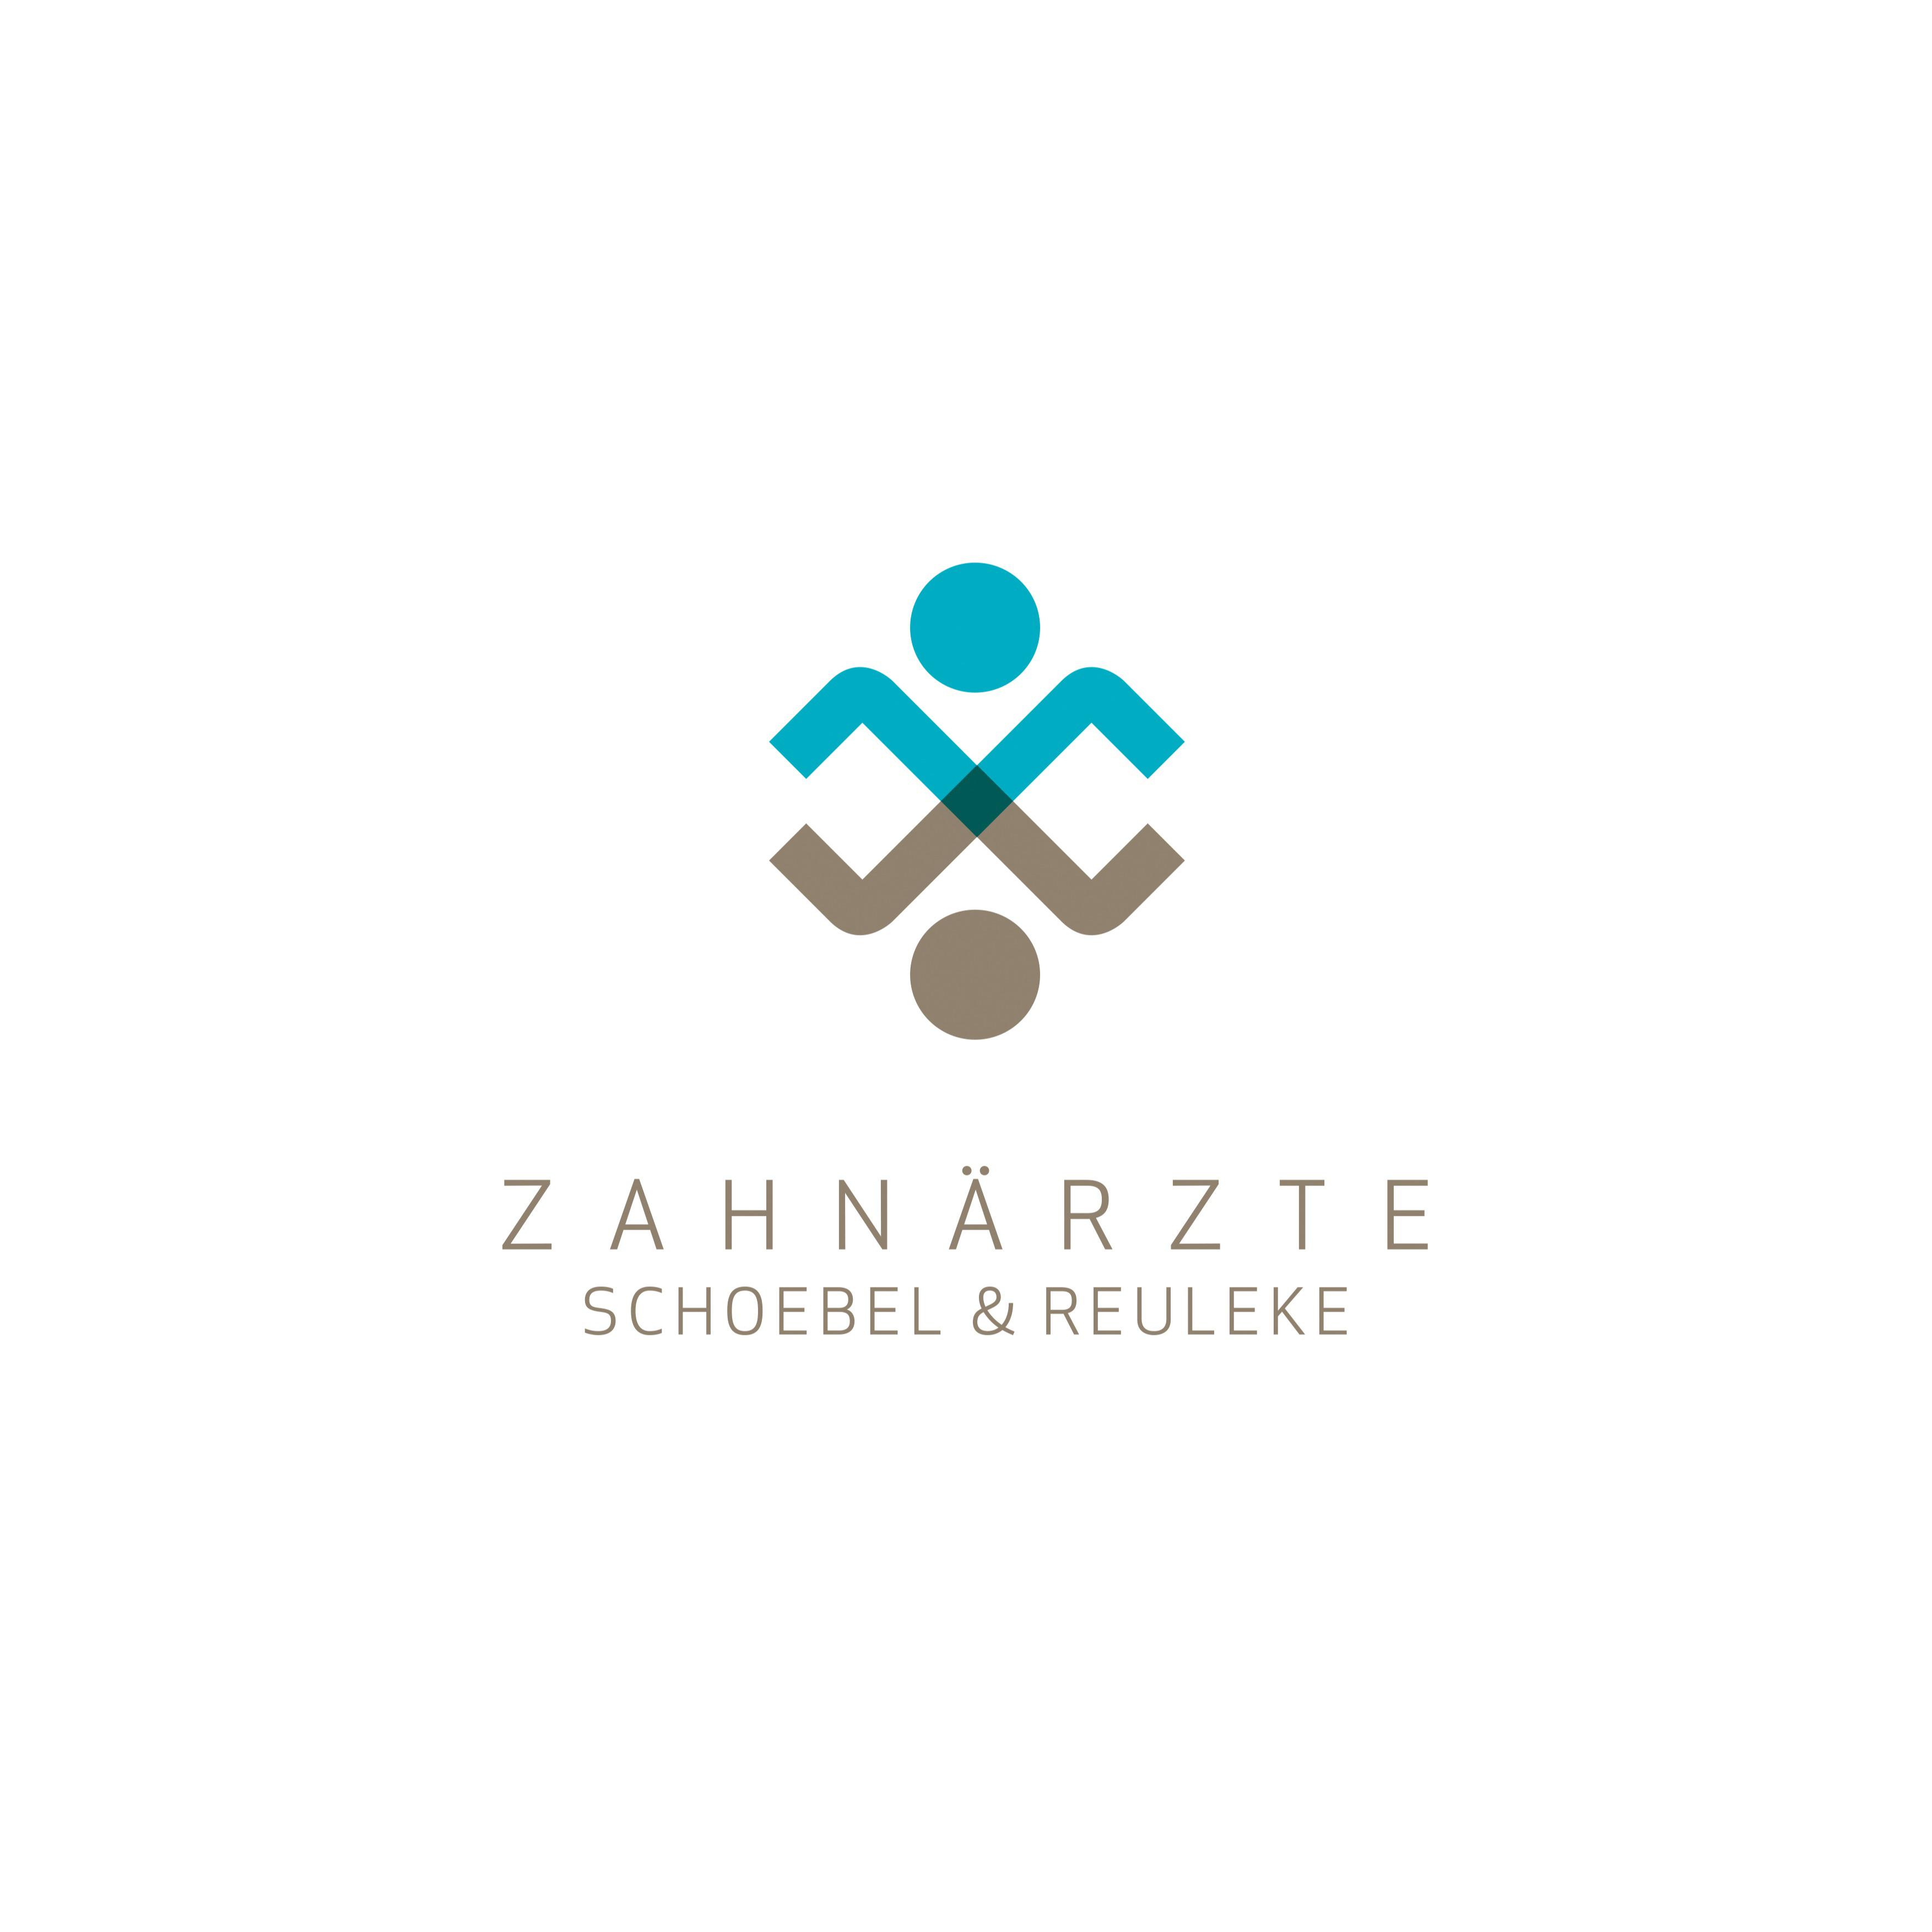 Zahnarztpraxis Schoebel & Reuleke Zahnarzt Hannover in Hannover - Logo